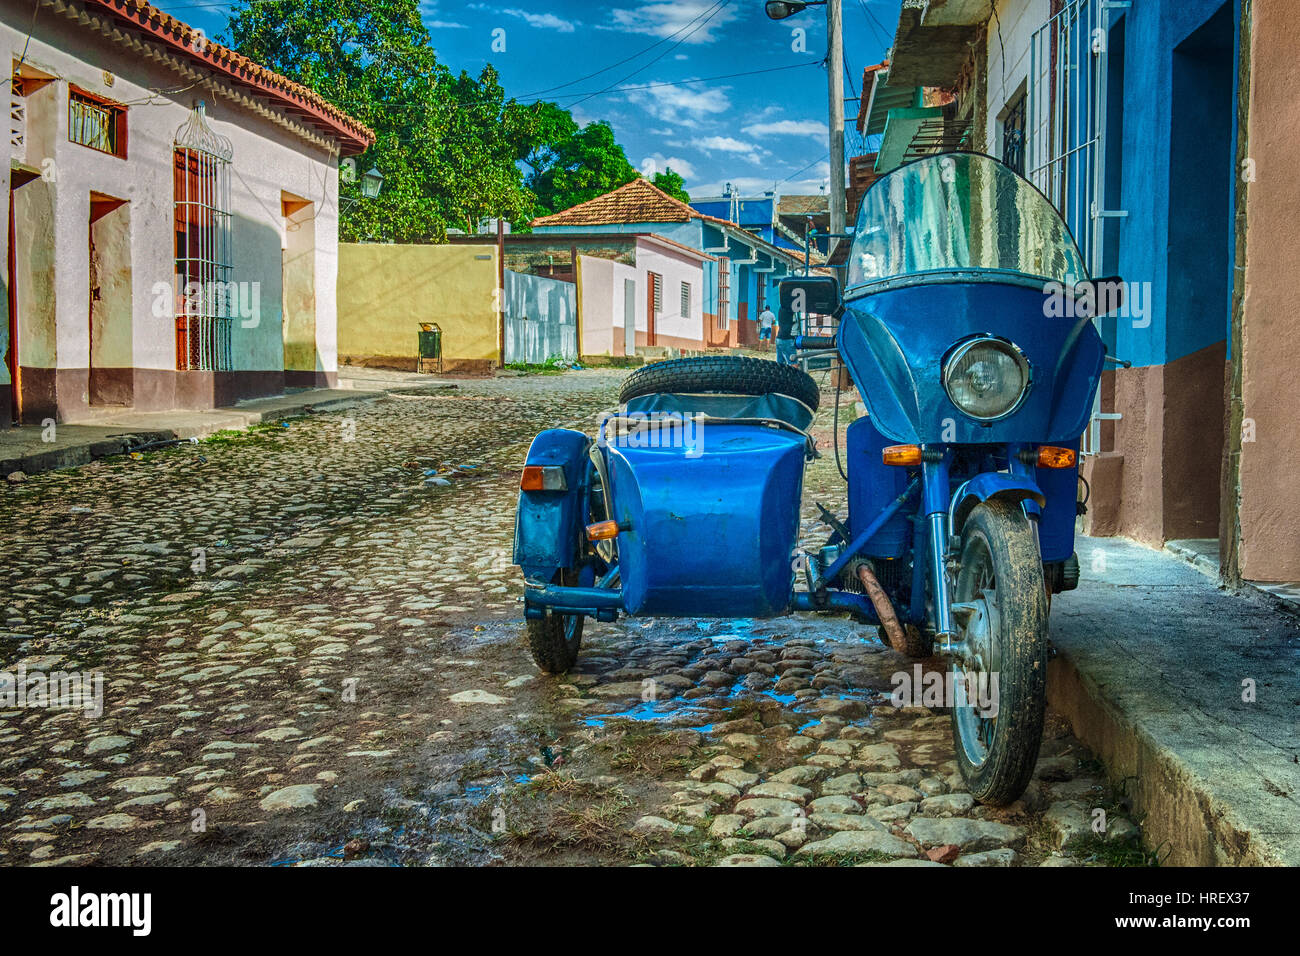 Un side-car dans une rue pavée à Trinidad, Cuba Banque D'Images